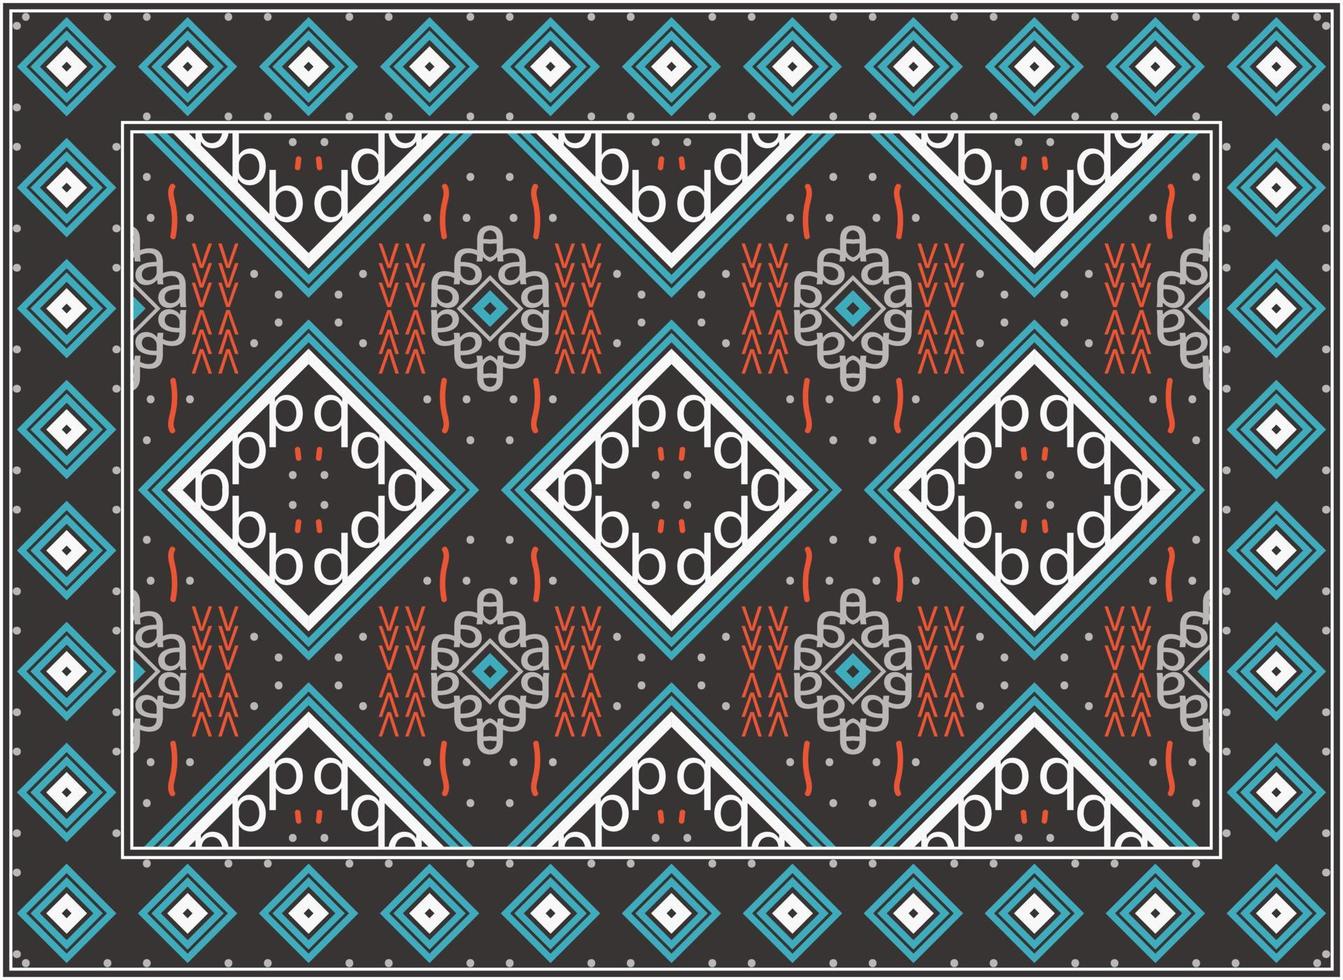 persisk matta modern levande rum, samtida modern persisk matta, afrikansk etnisk aztec stil design för skriva ut tyg mattor, handdukar, näsdukar, halsdukar matta, vektor